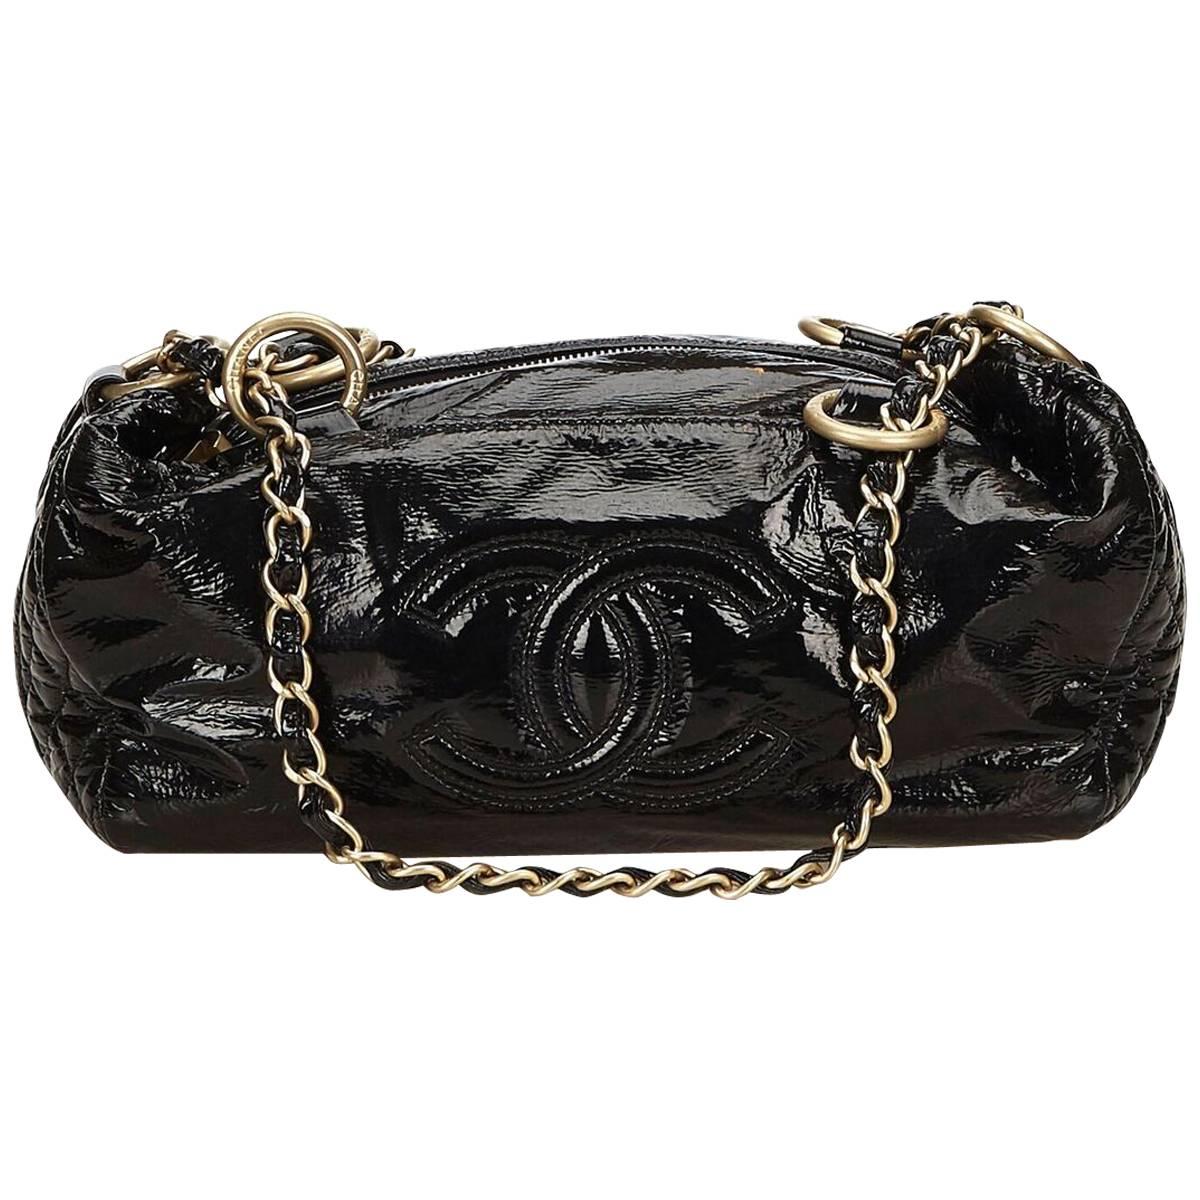 Black Chanel Patent Leather Shoulder Bag